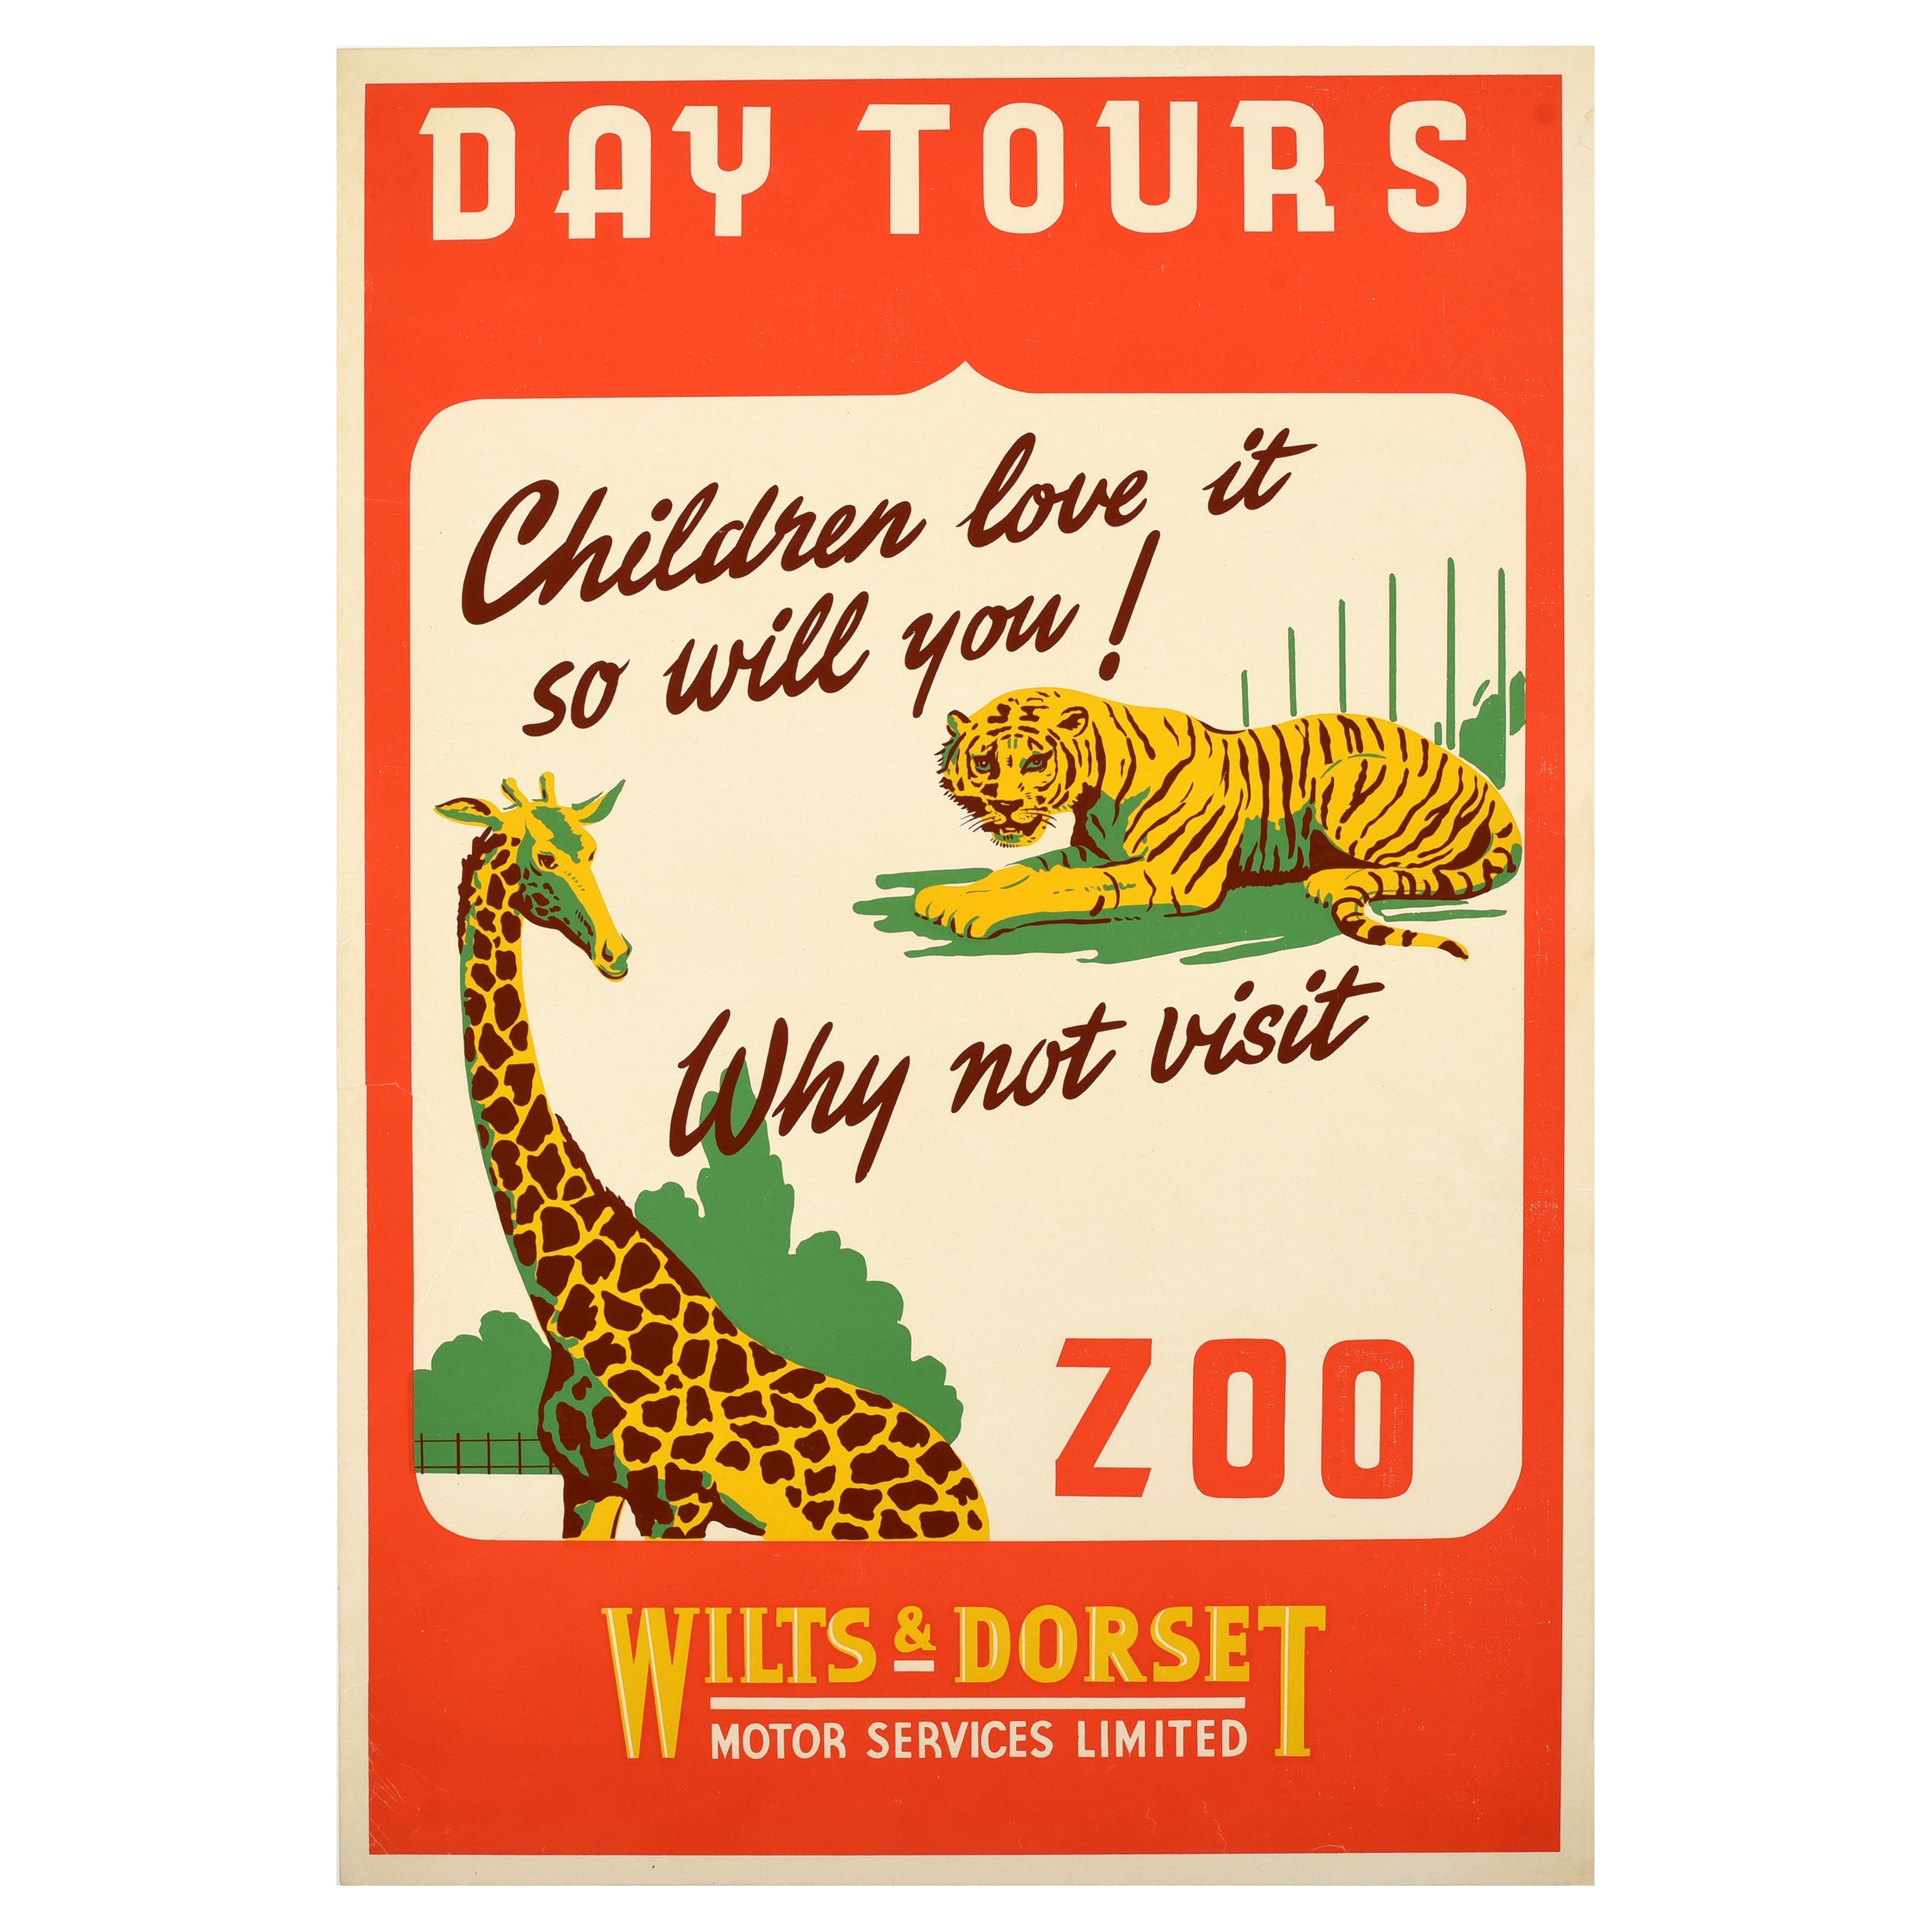 Affiche vintage d'origine du zoo, tigre girafe Wilts & Dorset, tours de jour